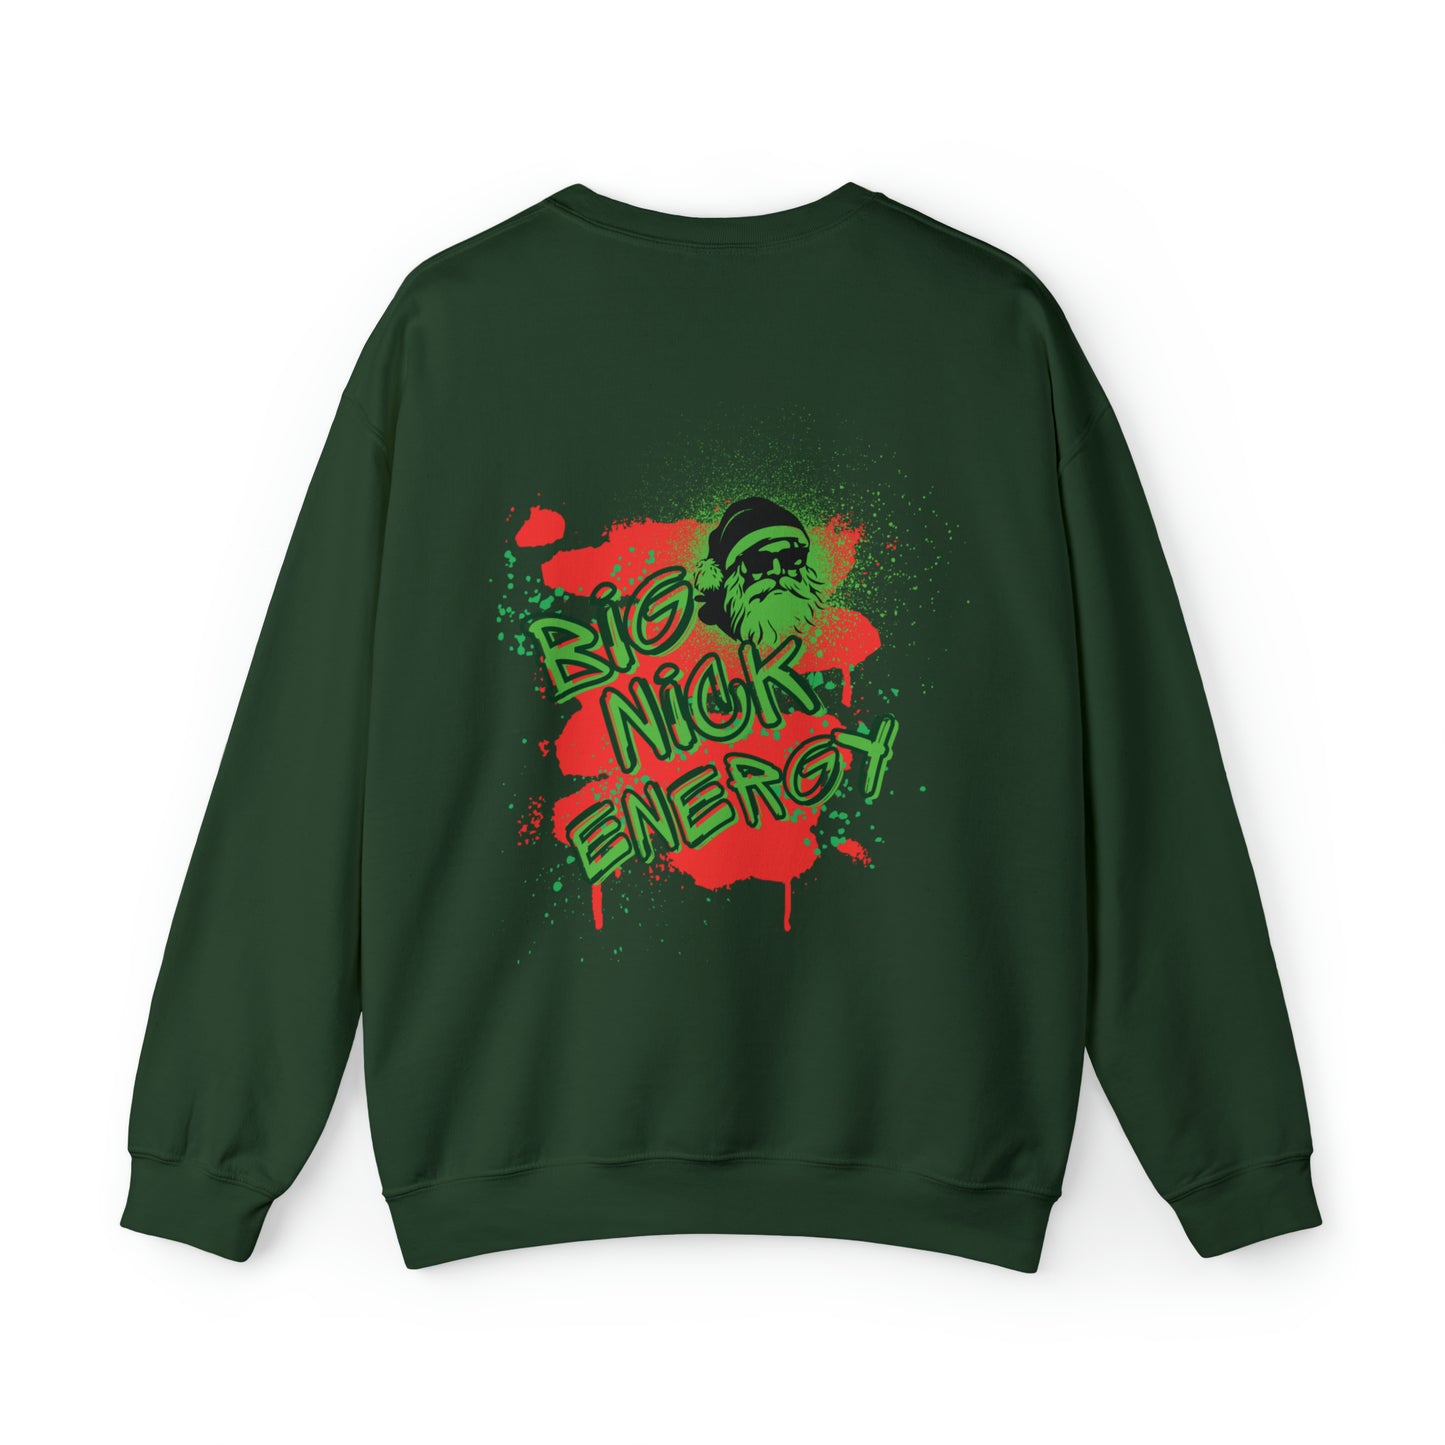 "Big Nick Energy" Christmas Sweatshirt